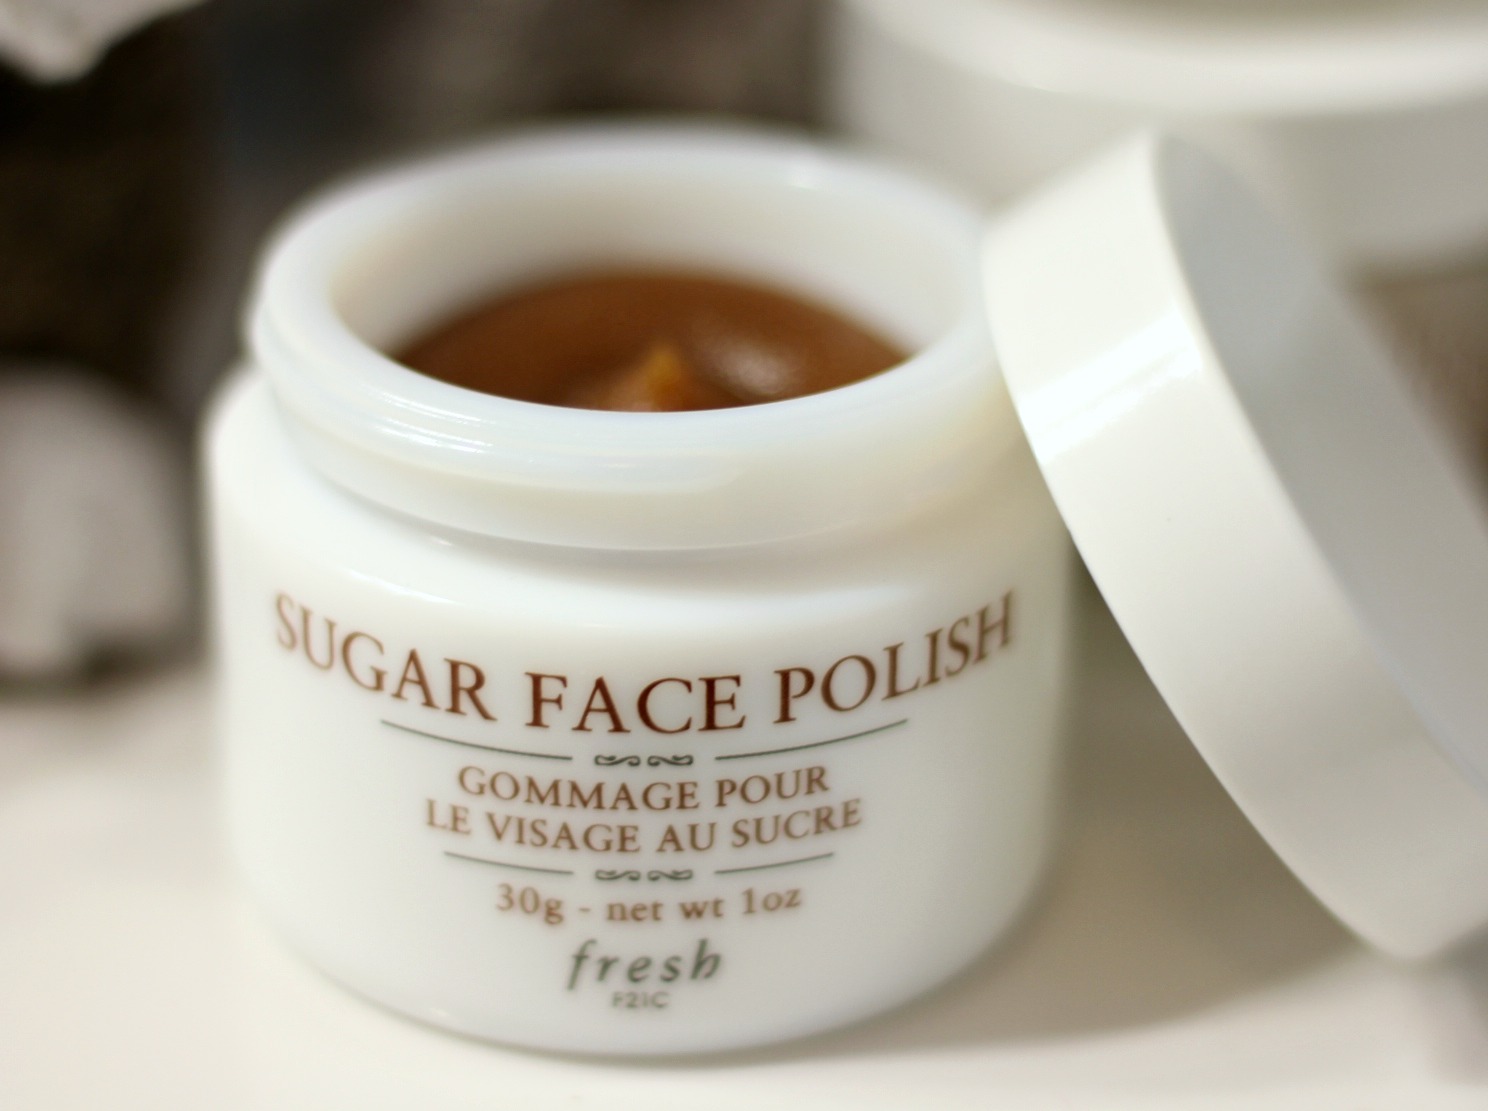 Fresh Sugar Face Polish 30 g.,Fresh สครับผิวหน้า,Sugar Face Polish,Sugar Face Polish วิธีใช้,Sugar Face Polish ราคา